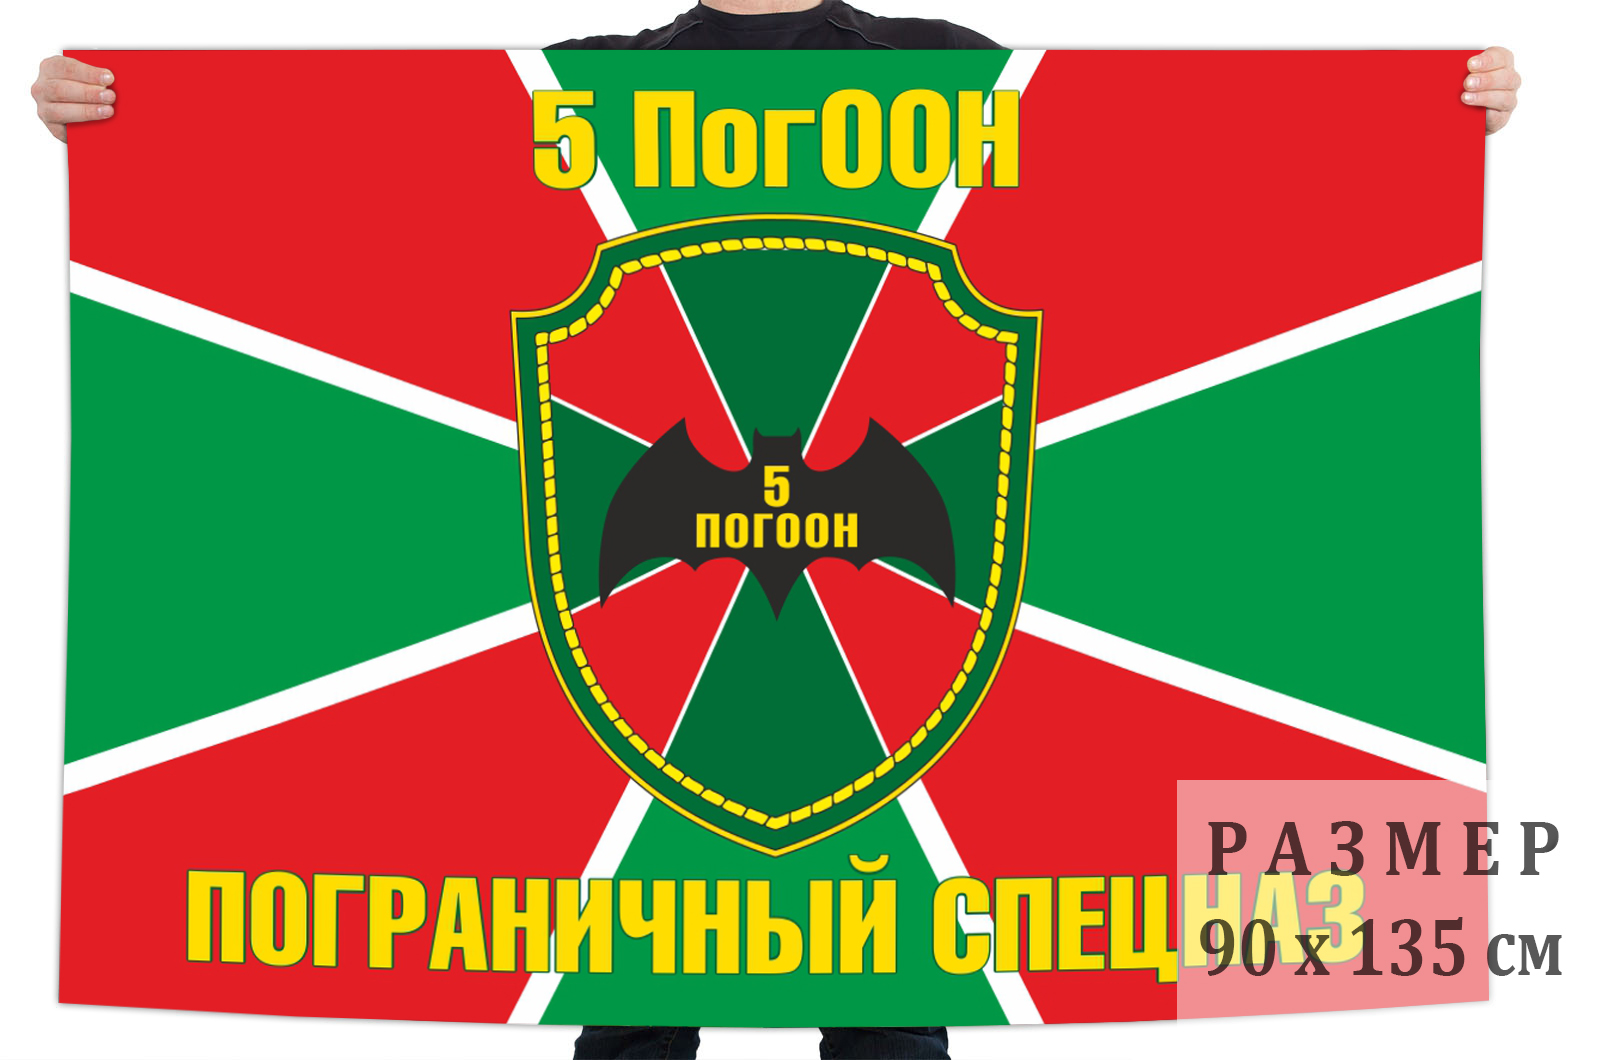 Купить в Москве флаг Пограничного Спецназа «5 ПогООН»